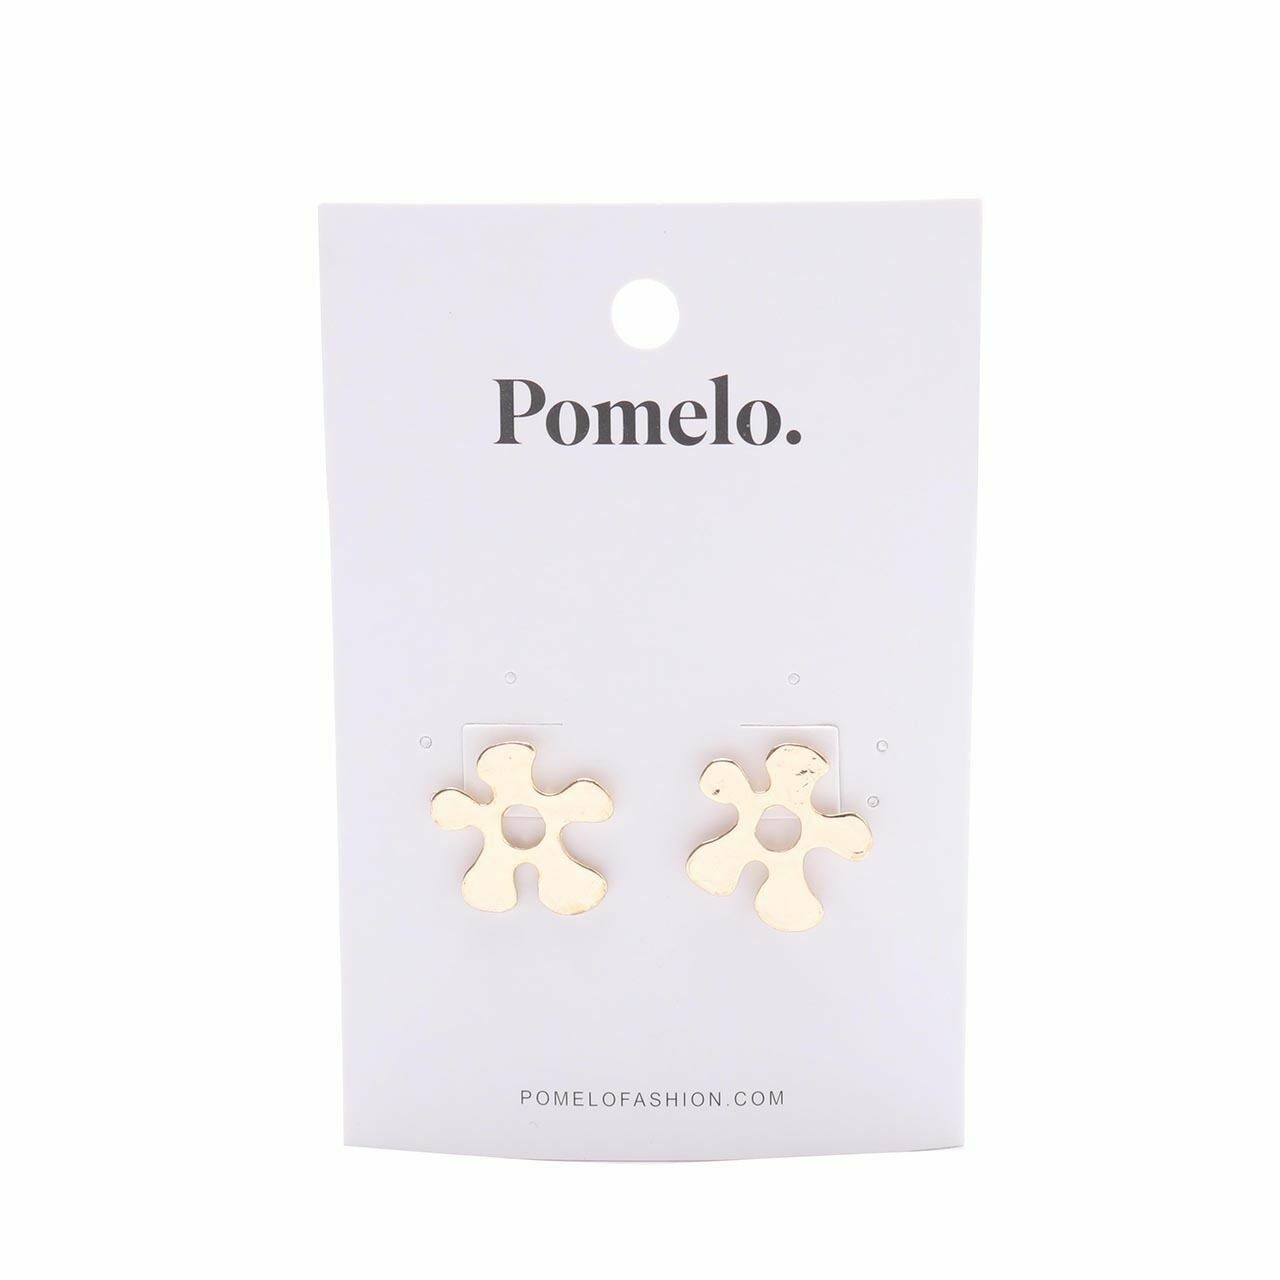 Pomelo. Gold Earrings Jewelry